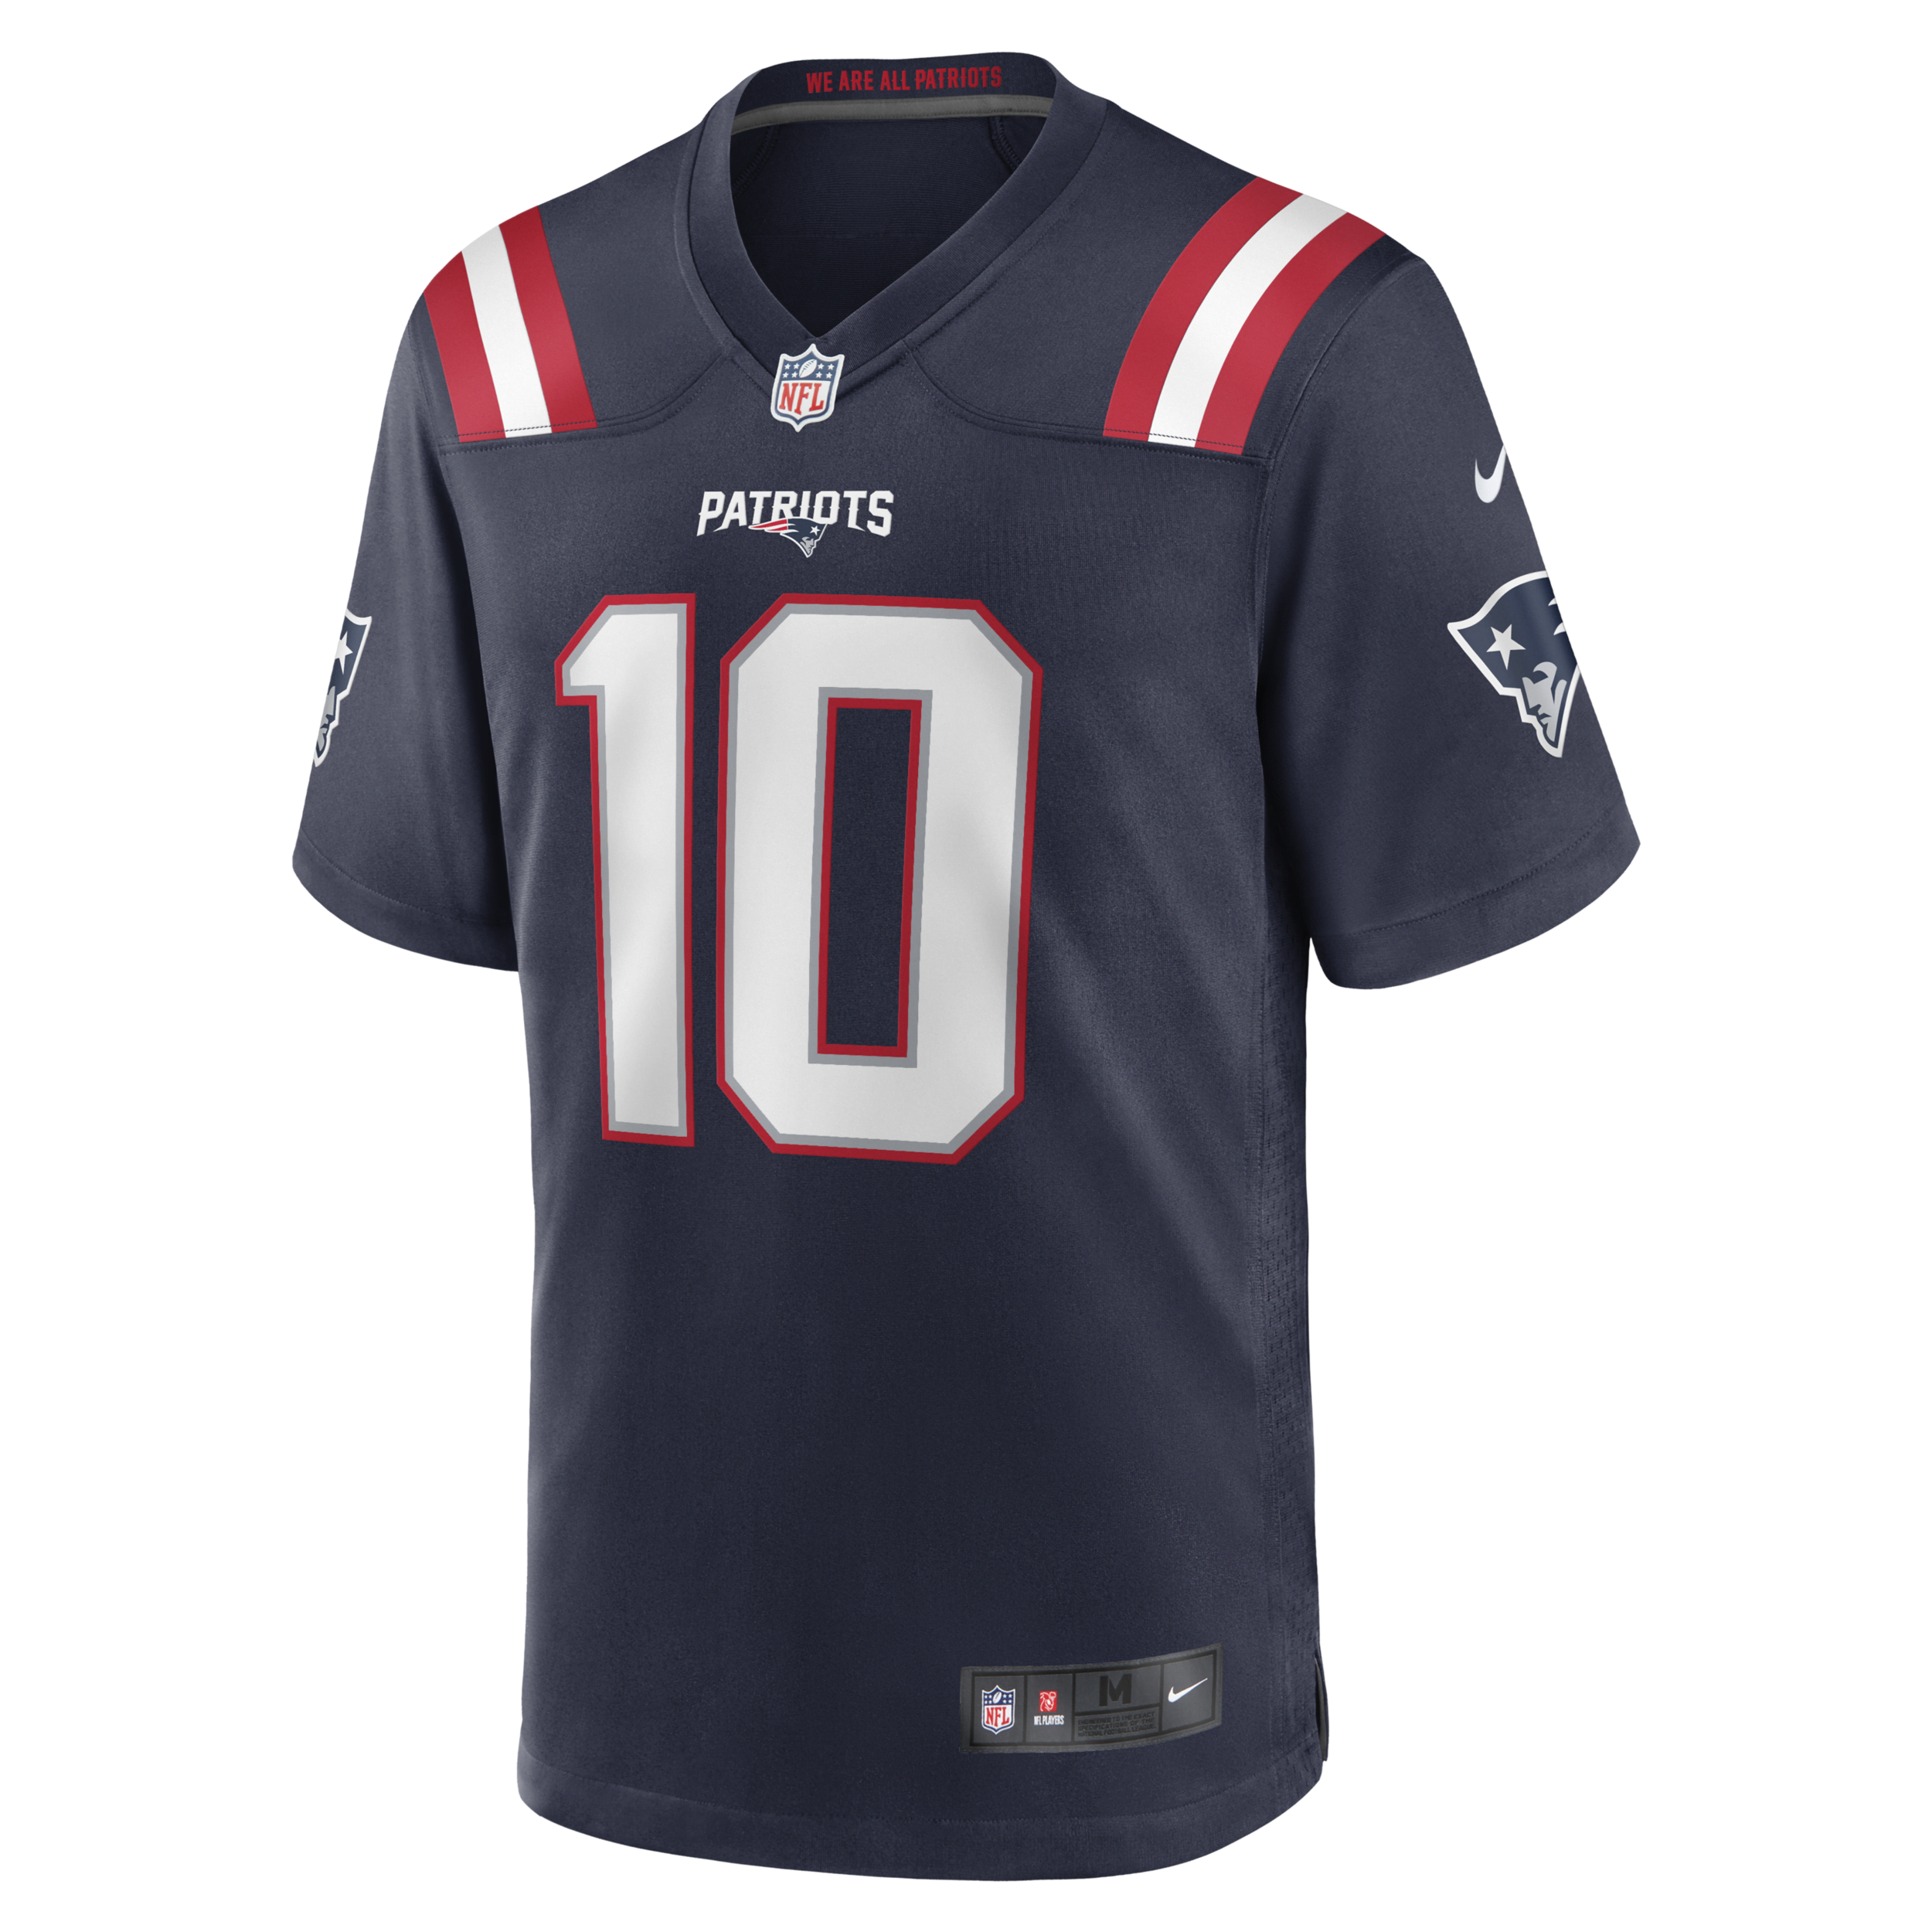 Nike NFL New England Patriots (Mac Jones) American football-wedstrijdjersey voor heren Blauw